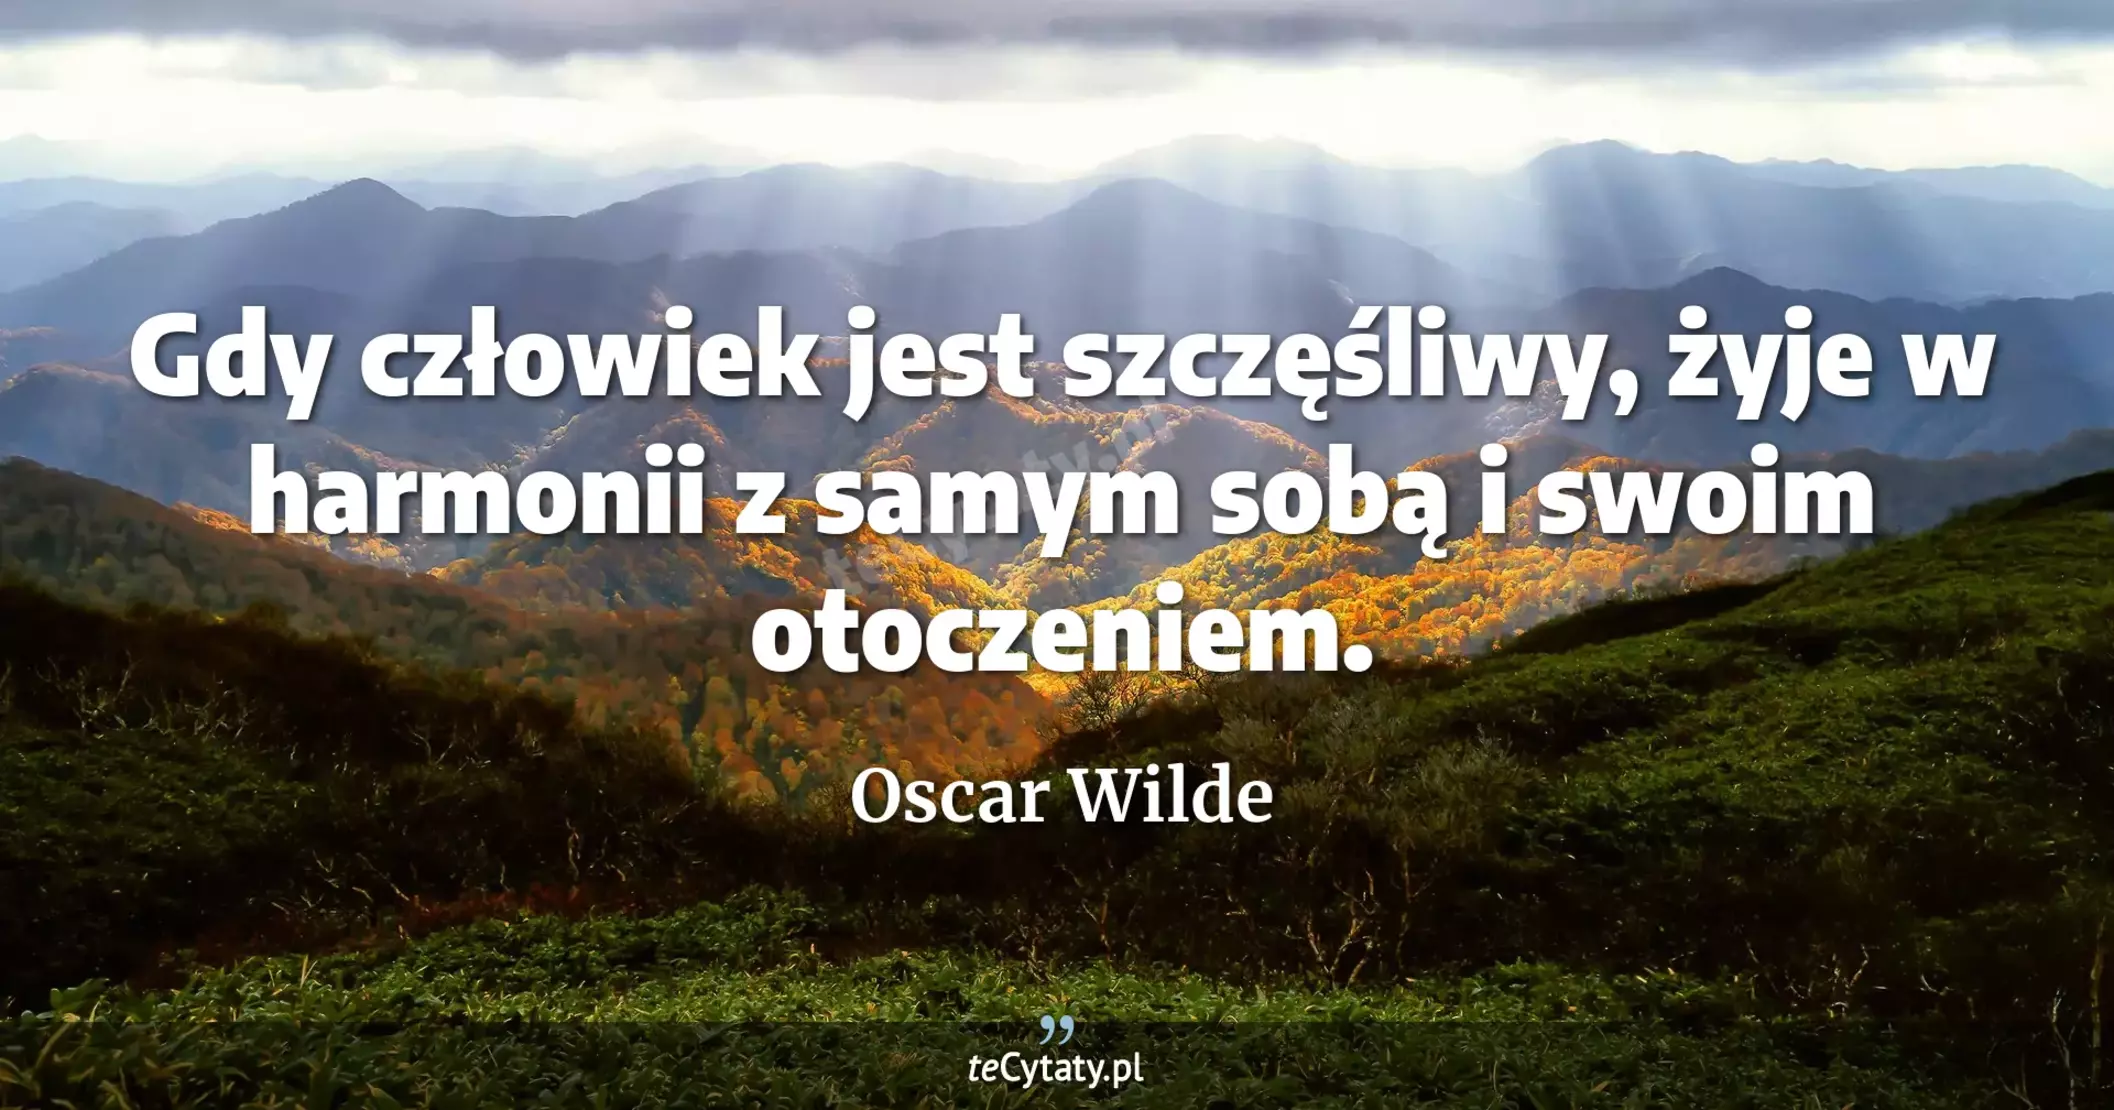 Gdy człowiek jest szczęśliwy, żyje w harmonii z samym sobą i swoim otoczeniem. - Oscar Wilde